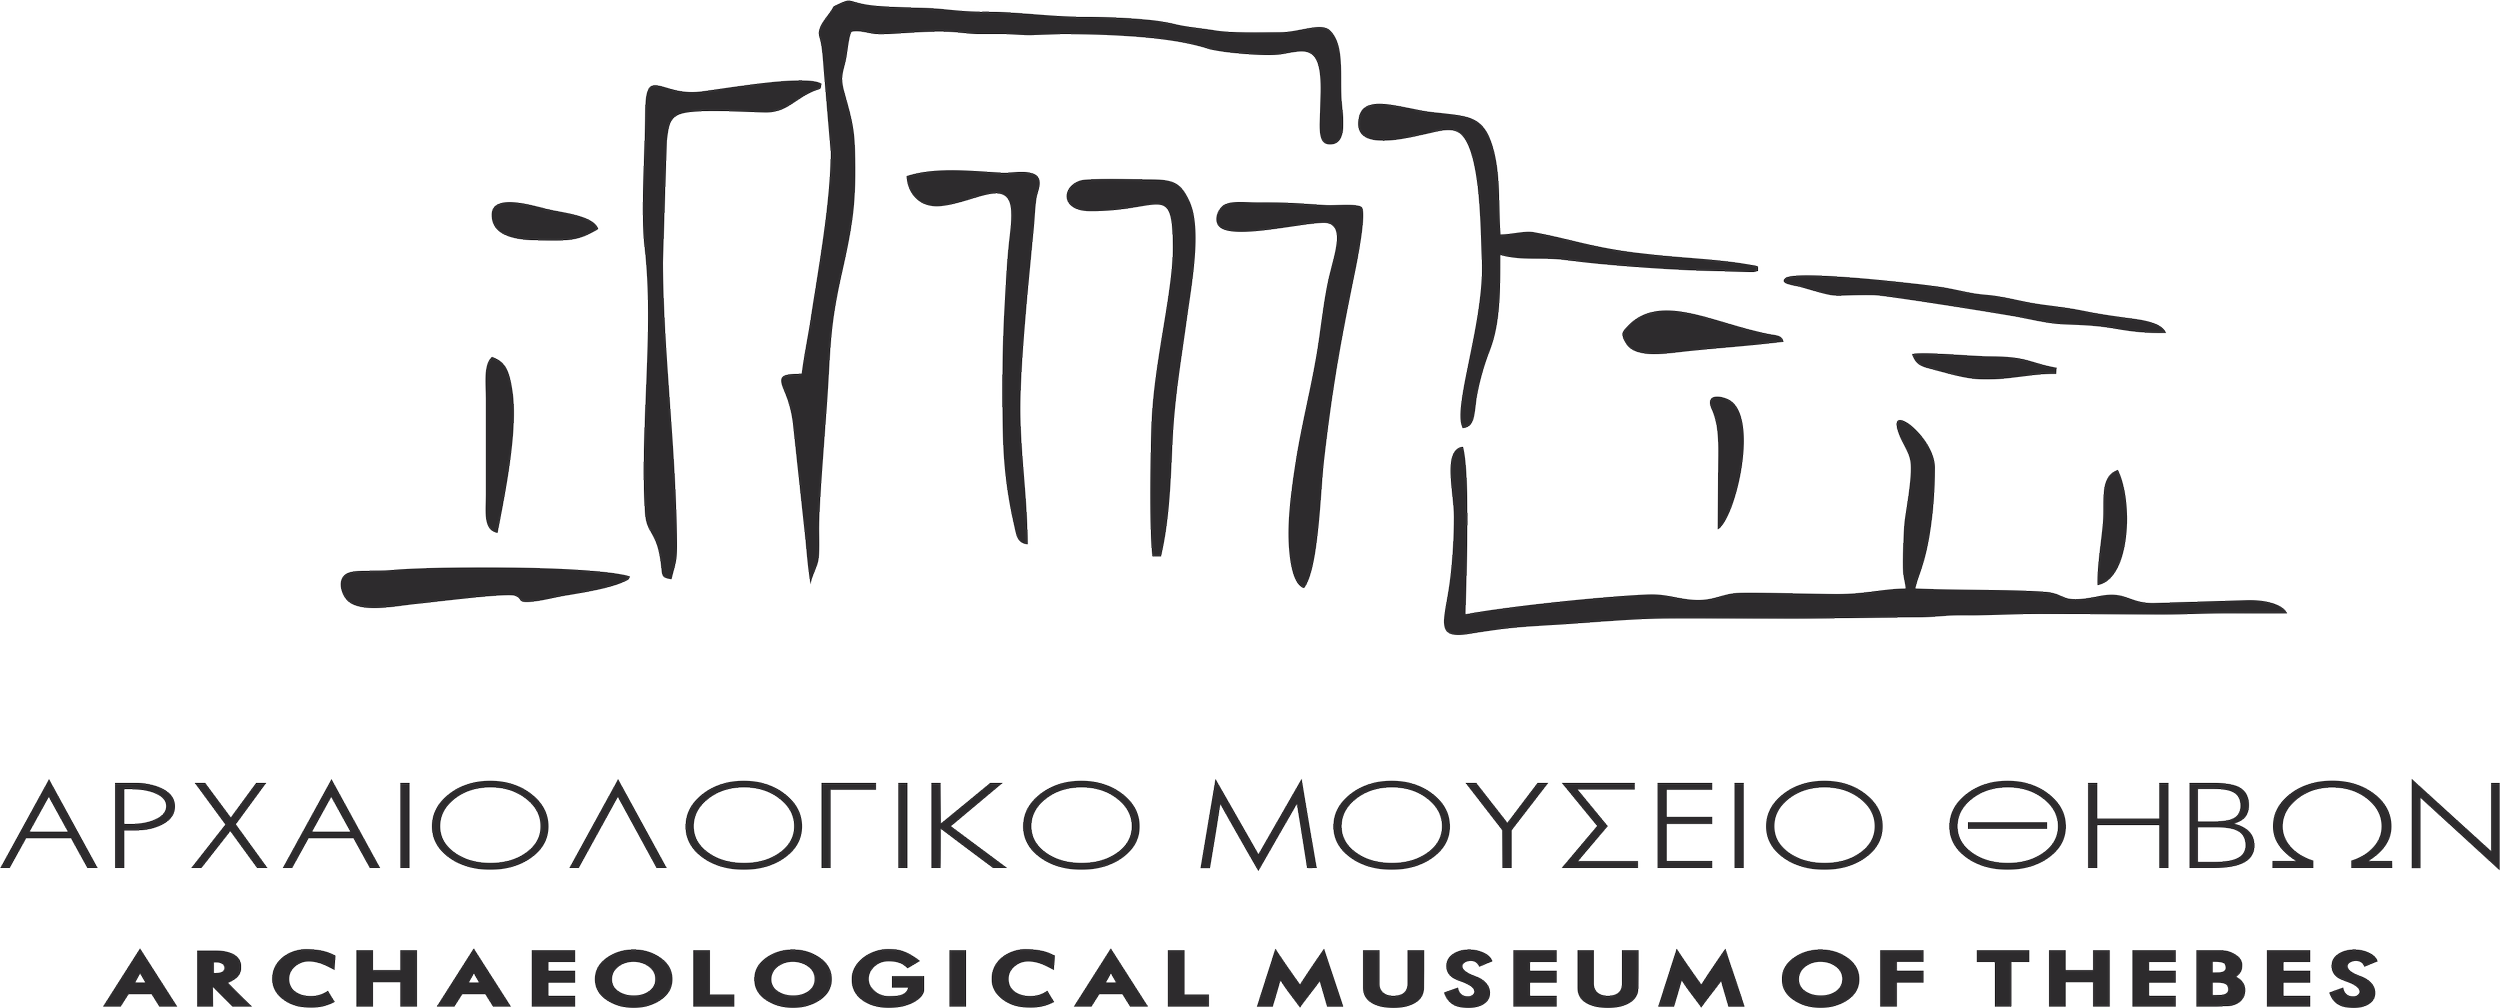 Logo Mouseiou Thivon.png